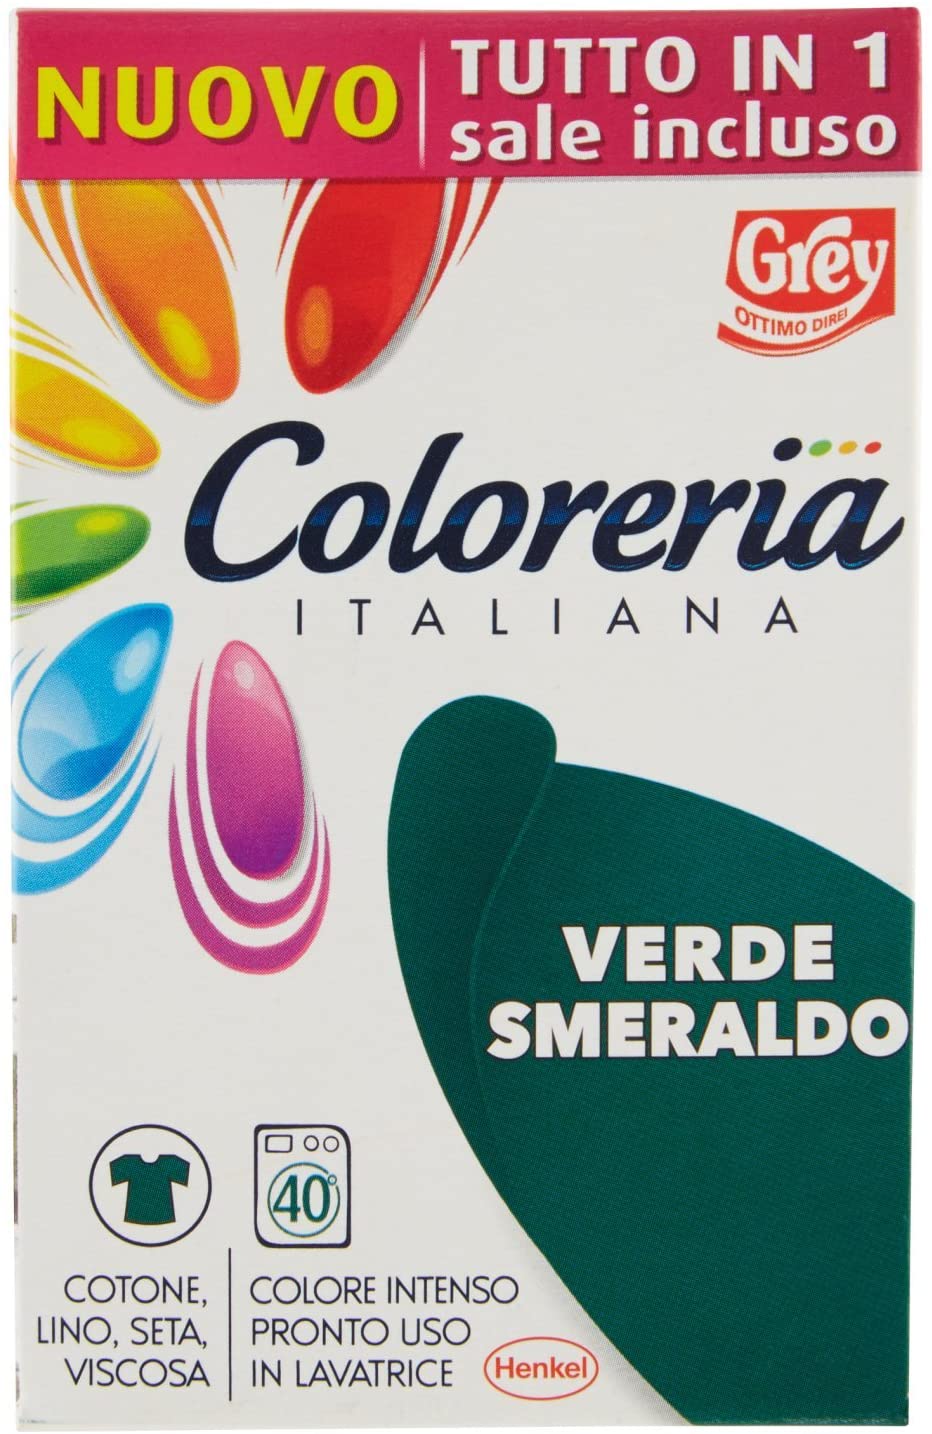 Coloreria Italiana colorante per tessuti Verde Smeraldo – Detergenti Wagner